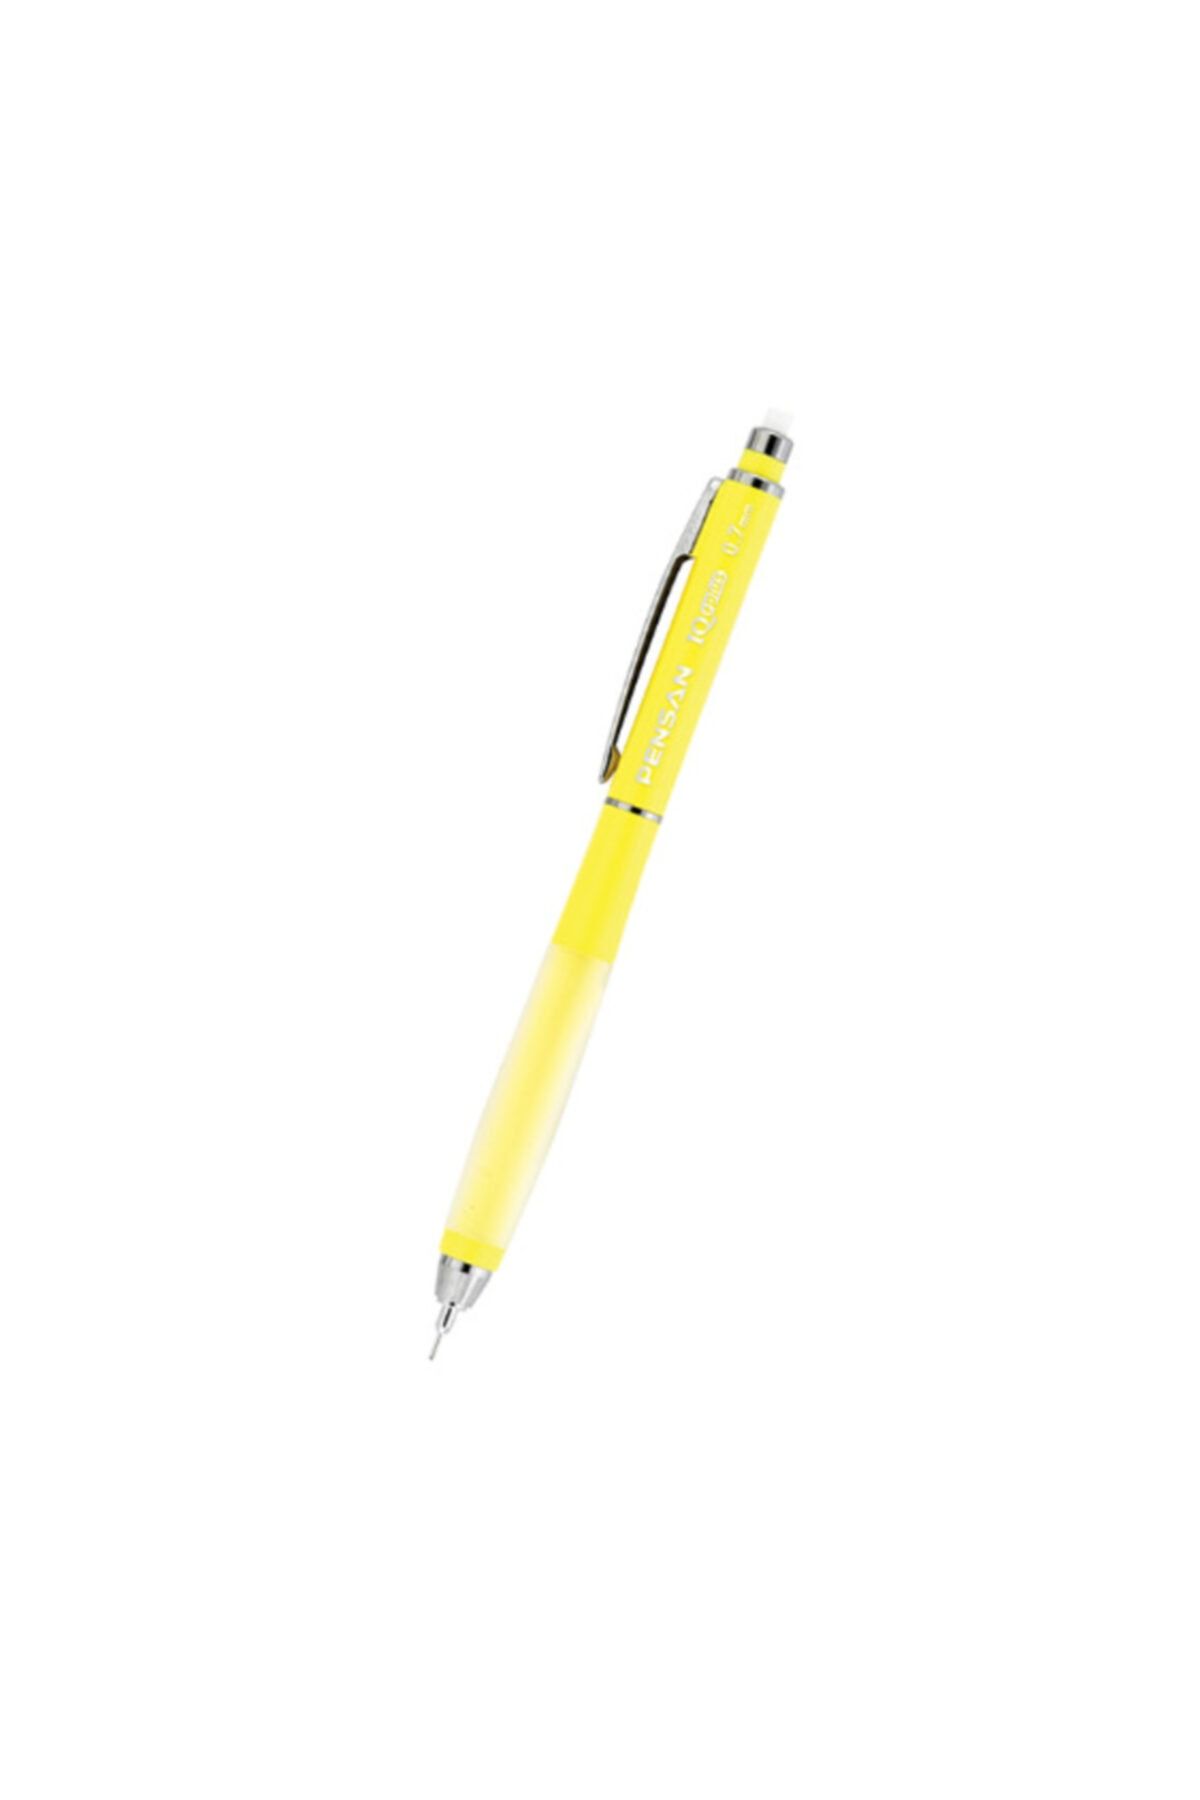 Pensan My-ıq Plus Versatil Kalem 0.7mn Sarı